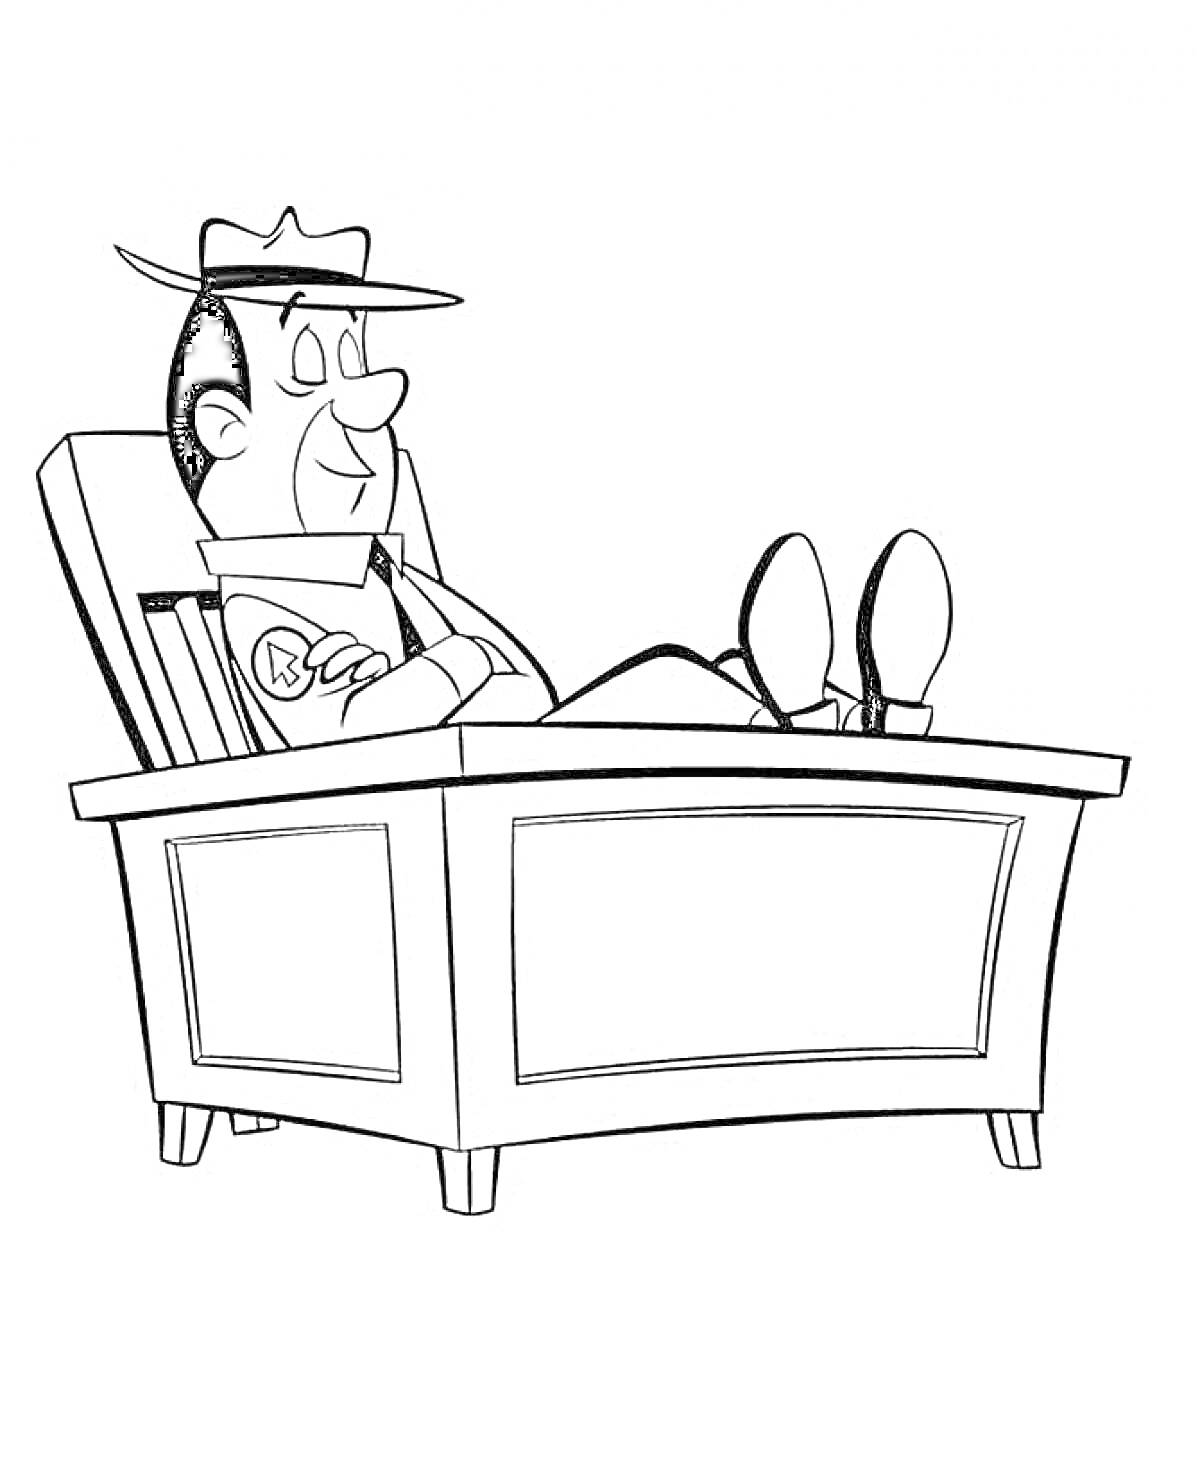 персонаж в шляпе отдыхает в кресле-качалке за письменным столом